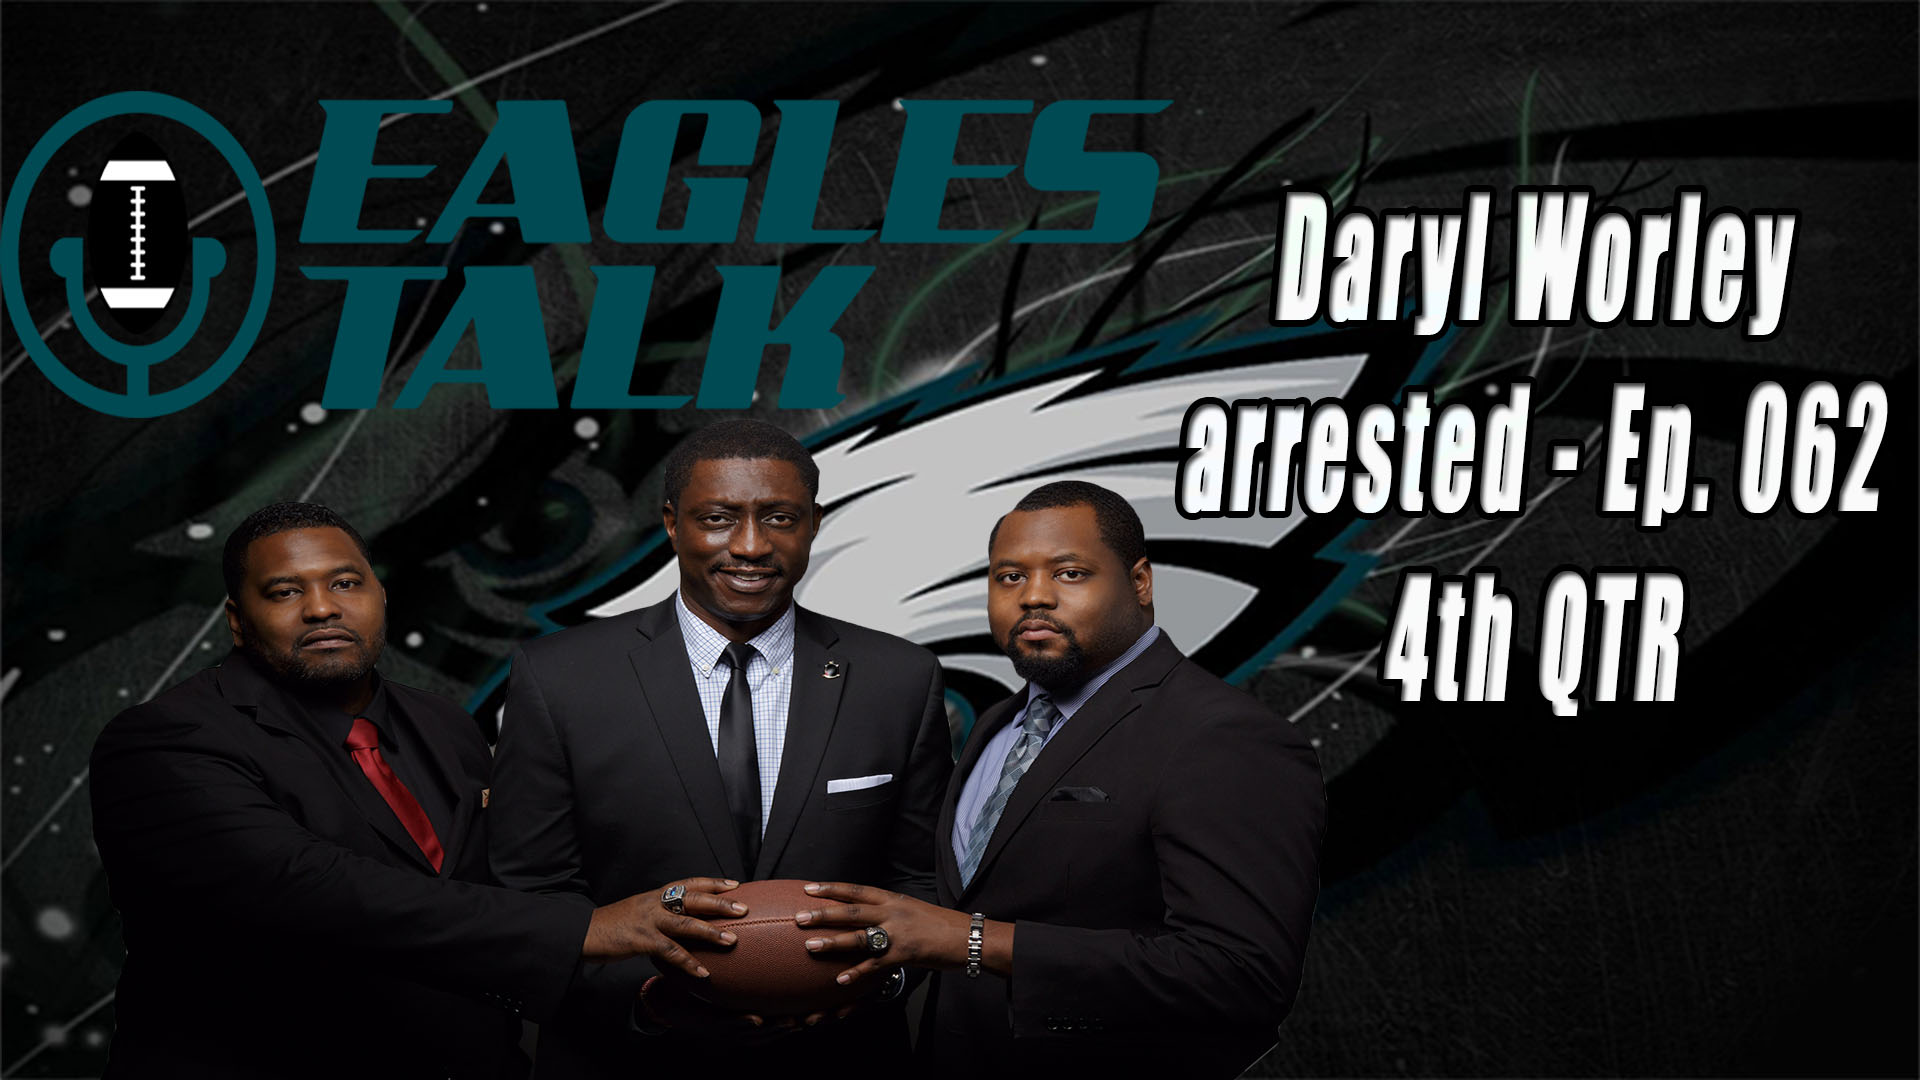 Eagles Talk Ep062 – Daryl Worley arrested (4TH QTR)